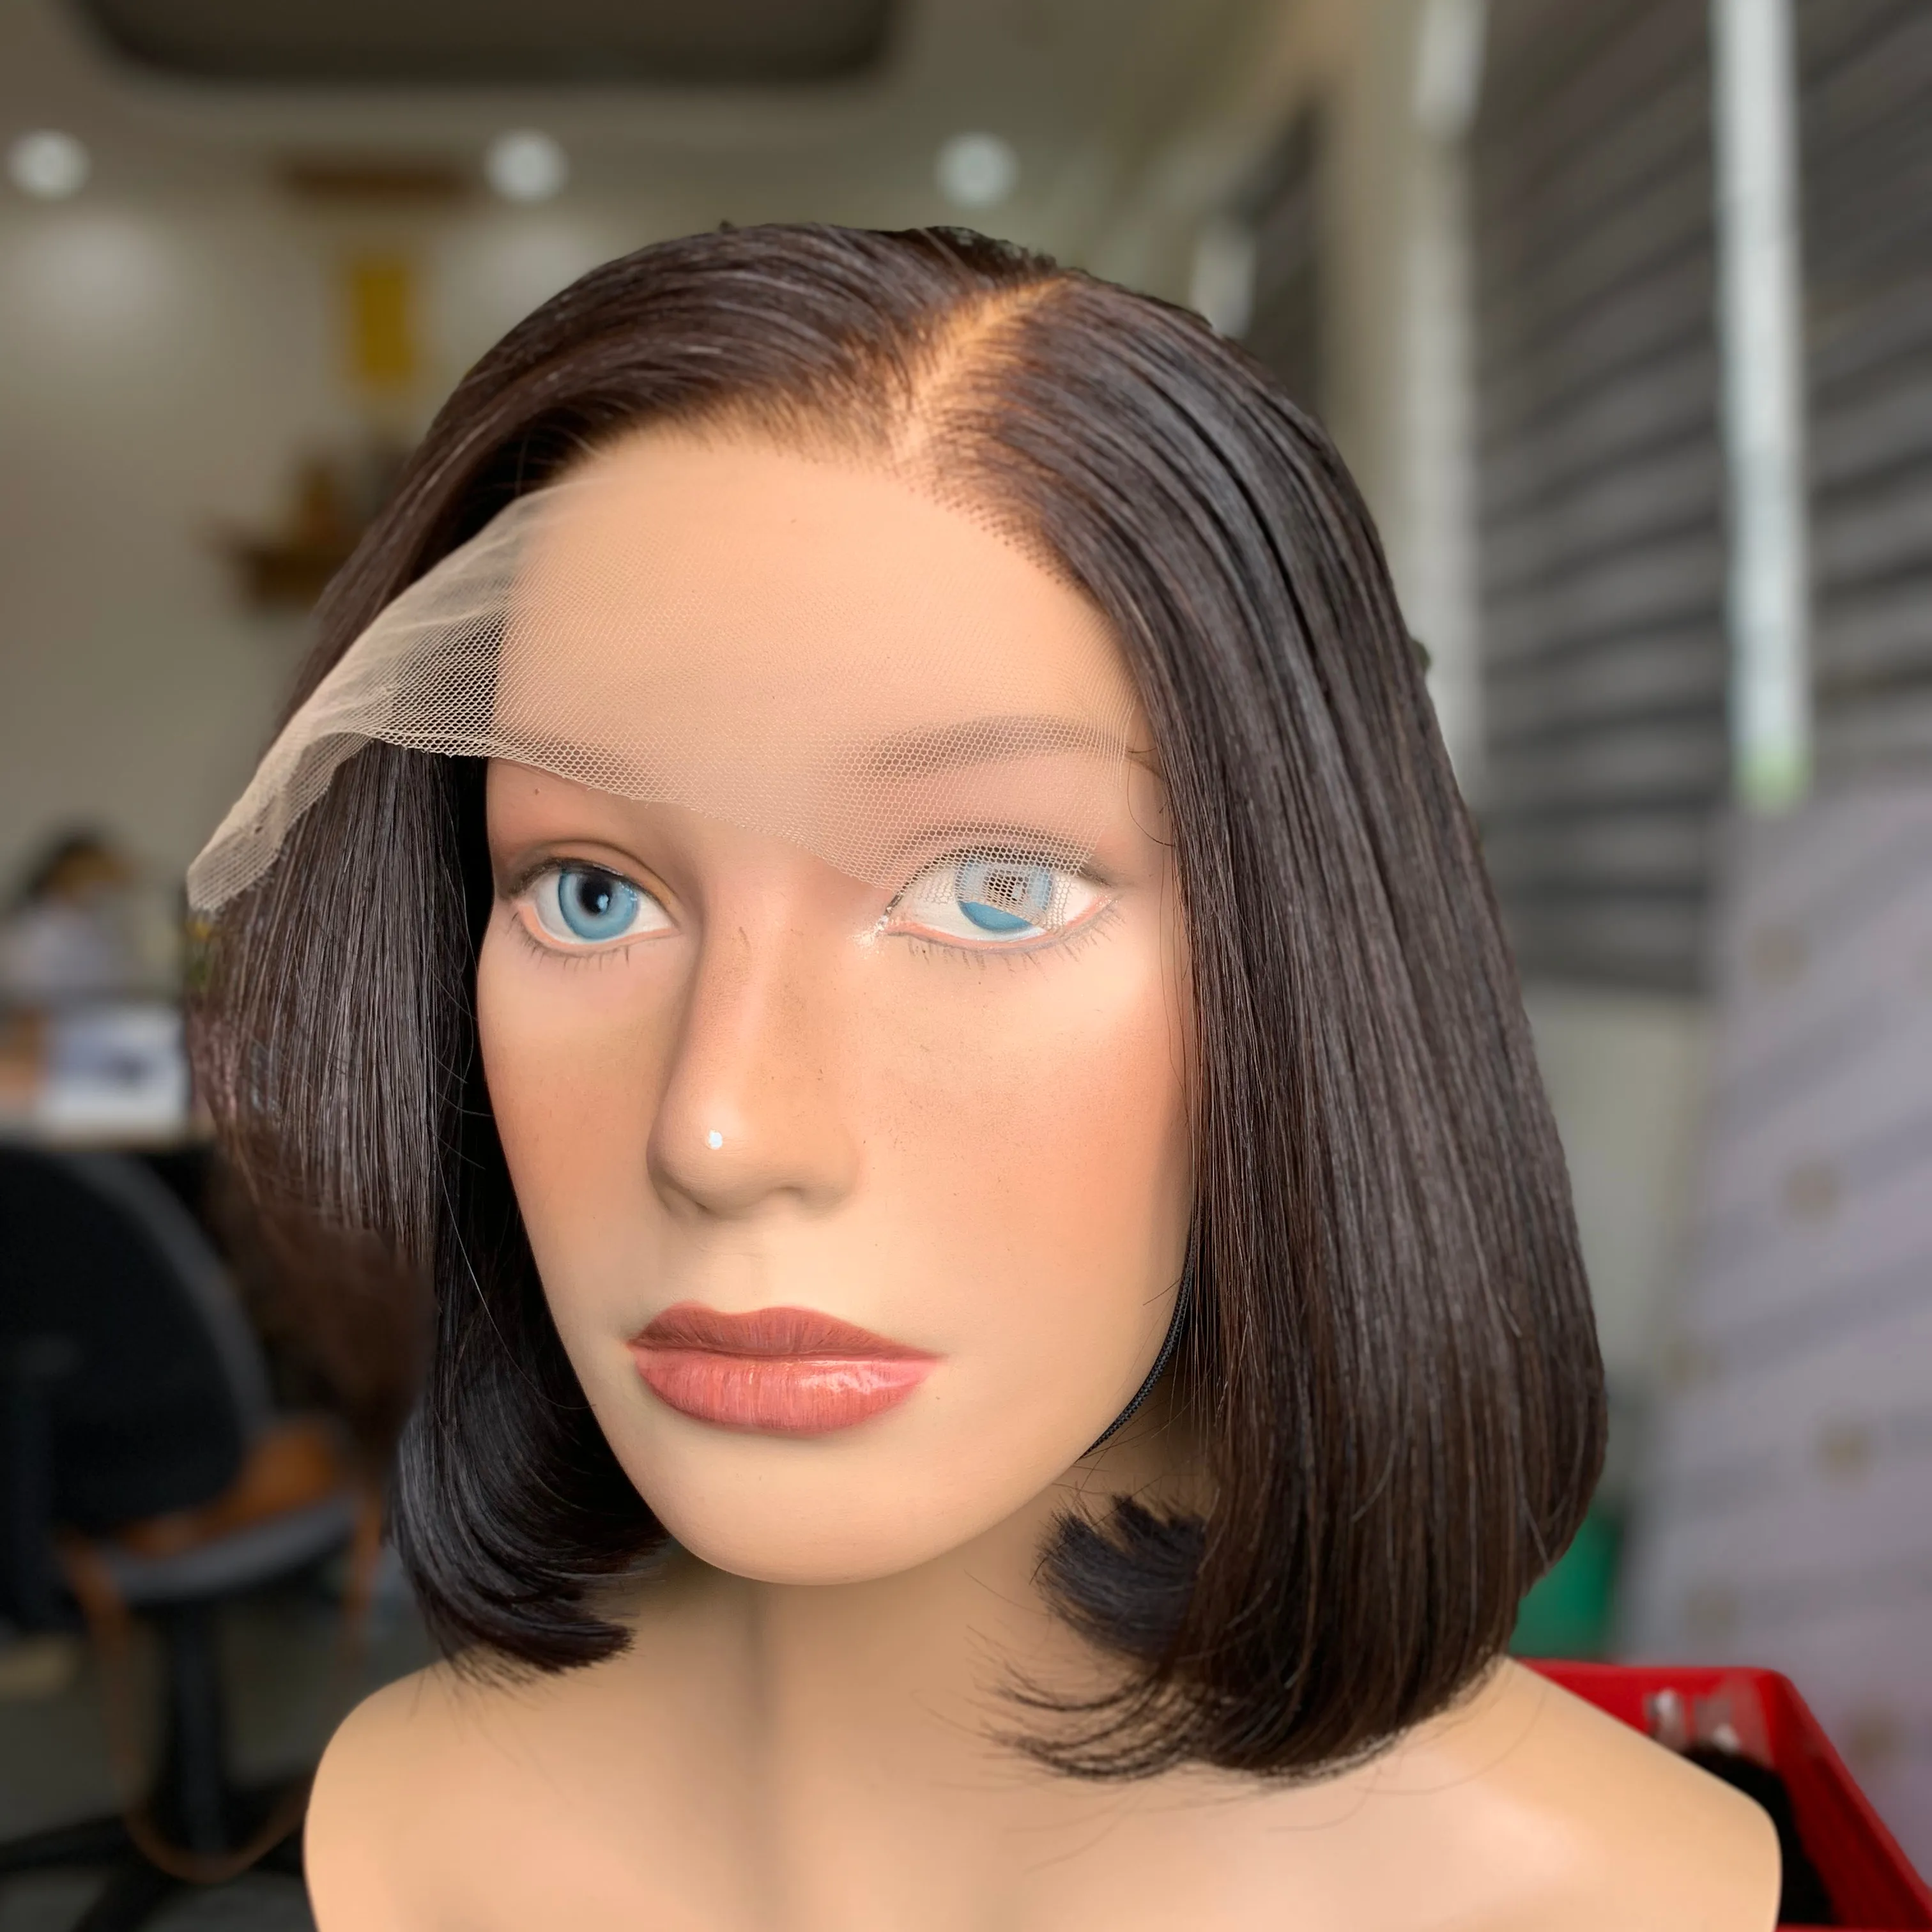 HD 레이스 실키 스트레이트 밥 가발 도매상 가격 기증자 머리 베트남 사람의 머리카락